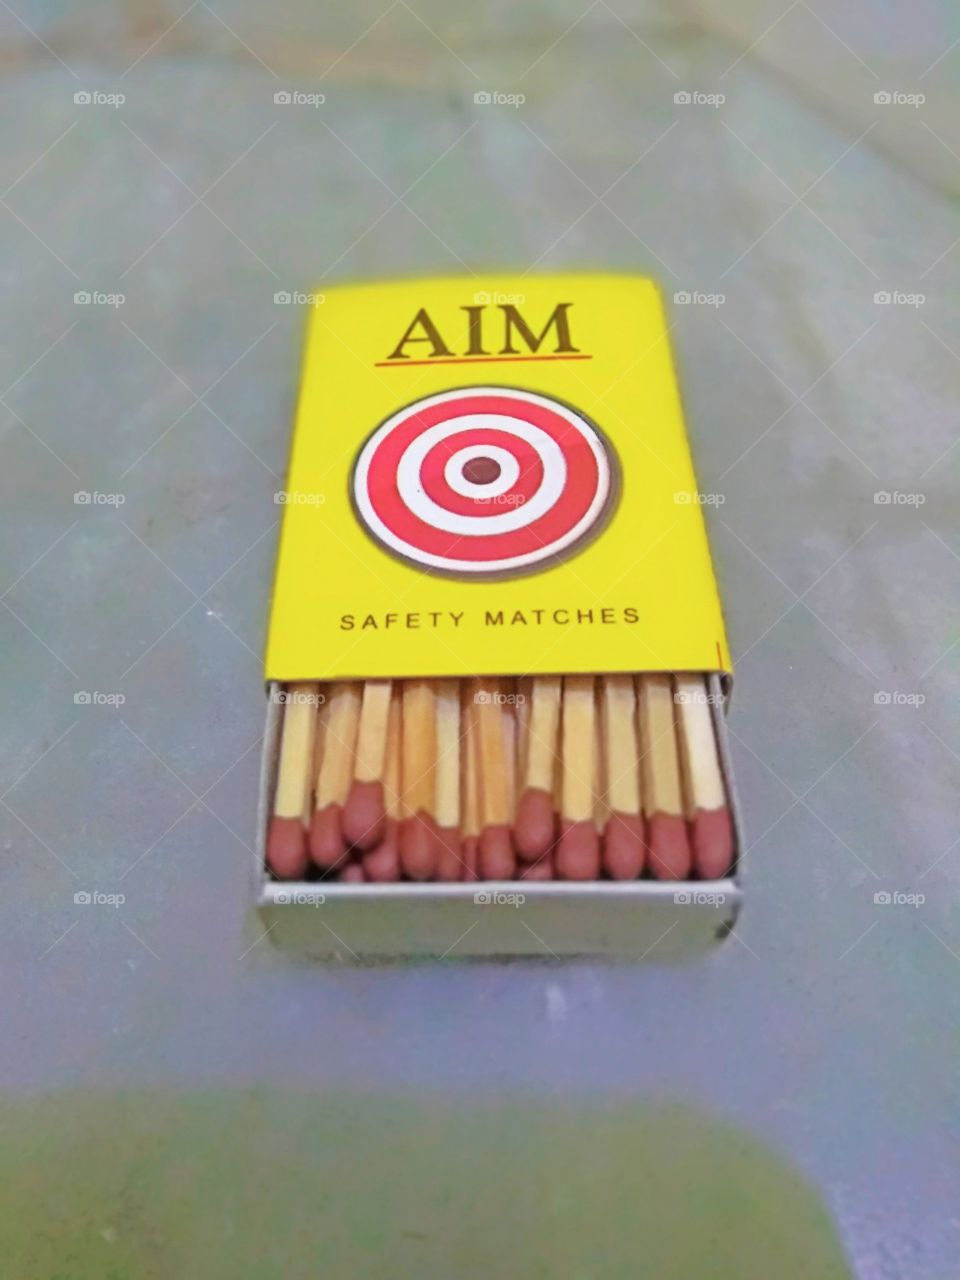 match box